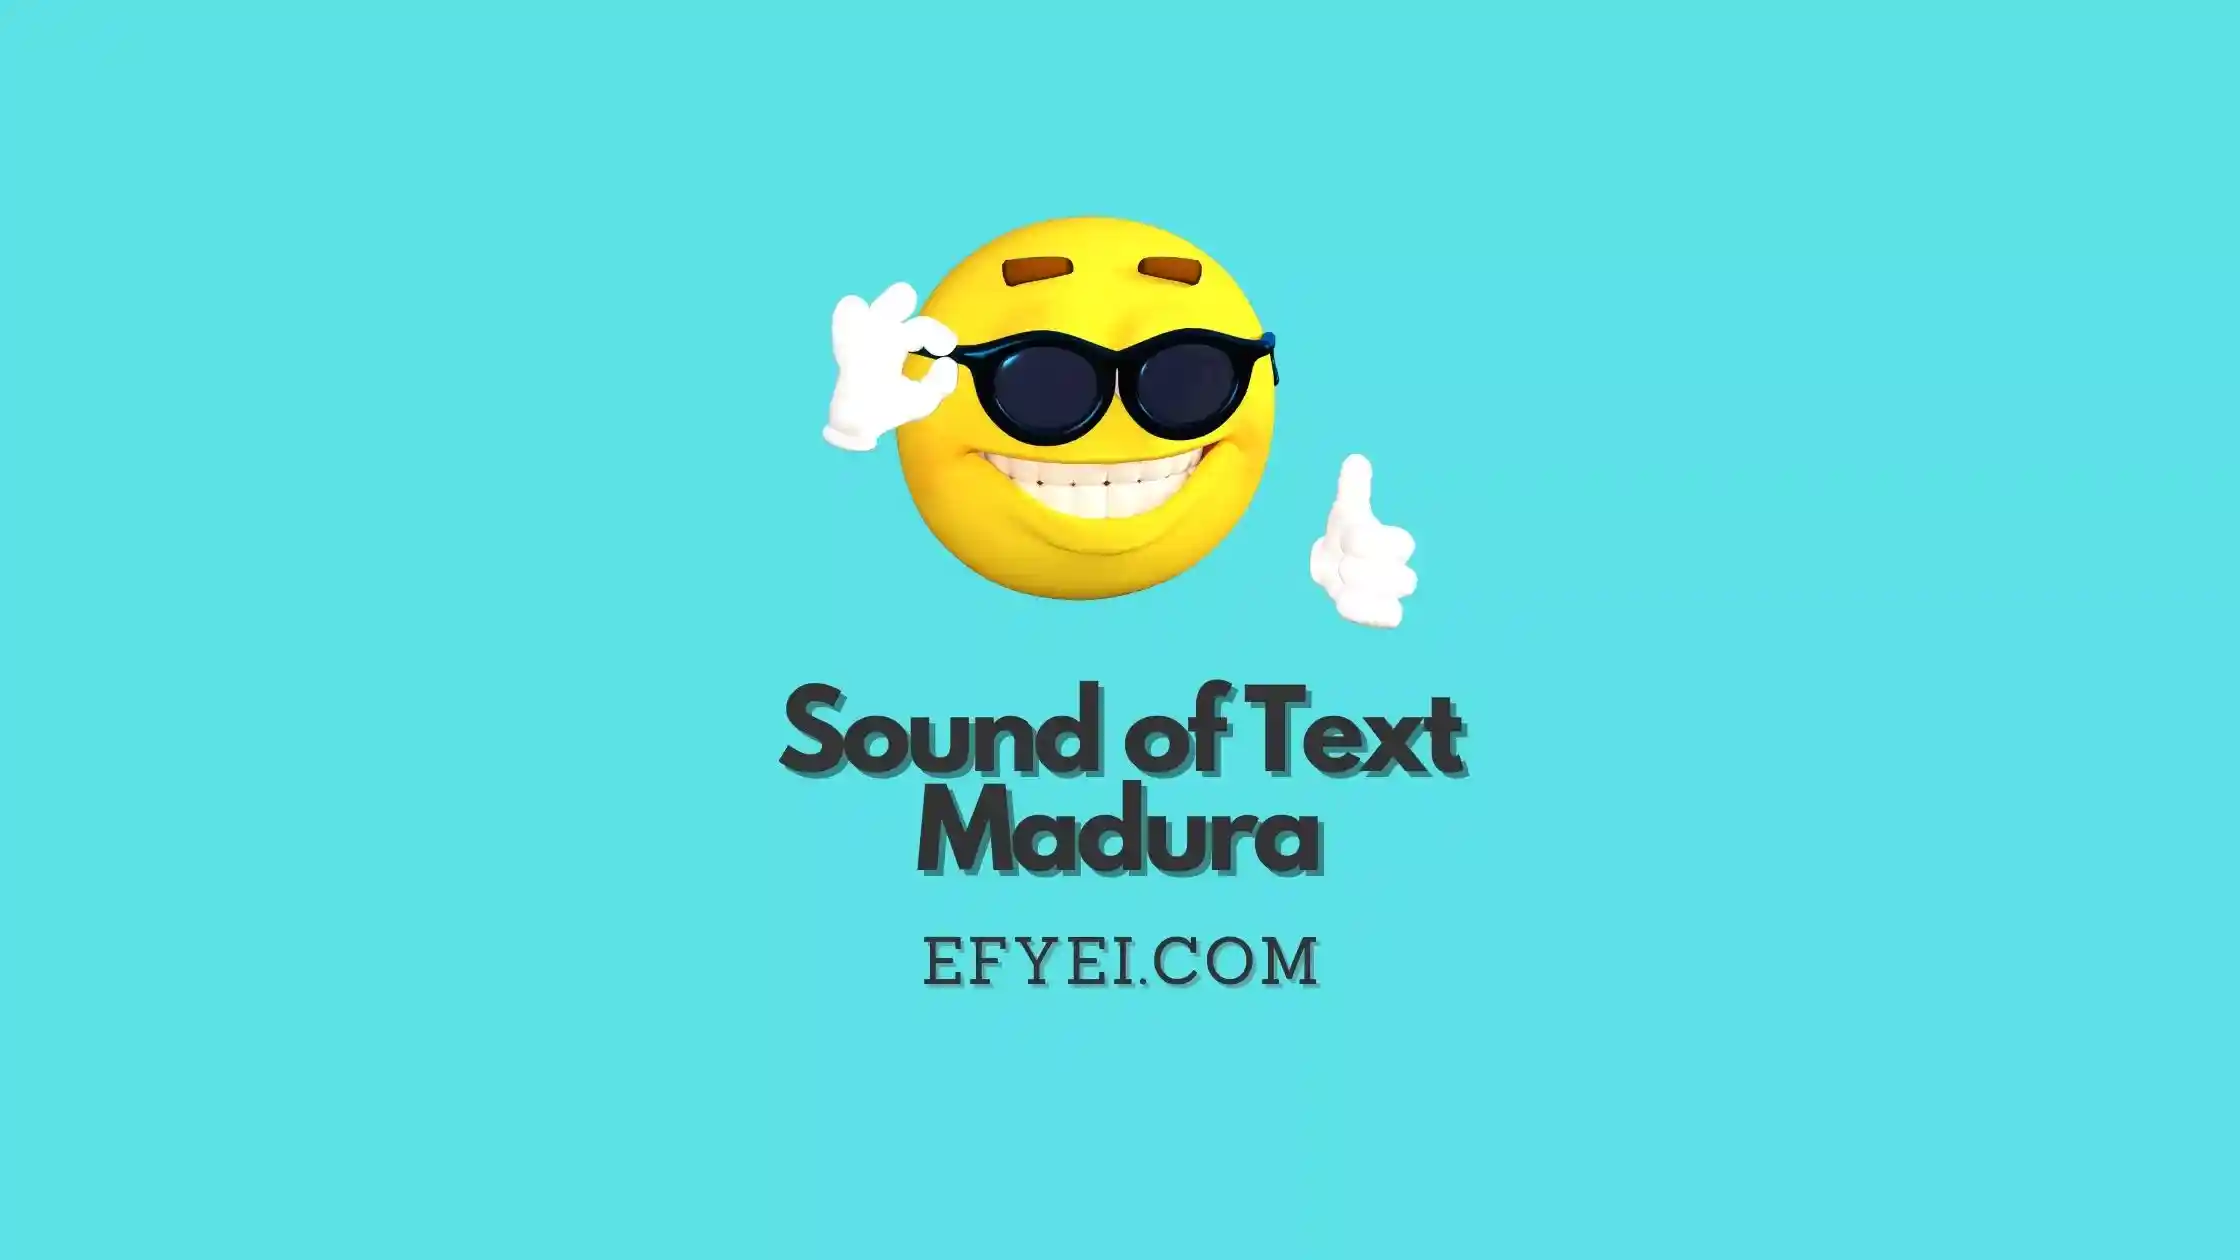 Sound of Text Madura